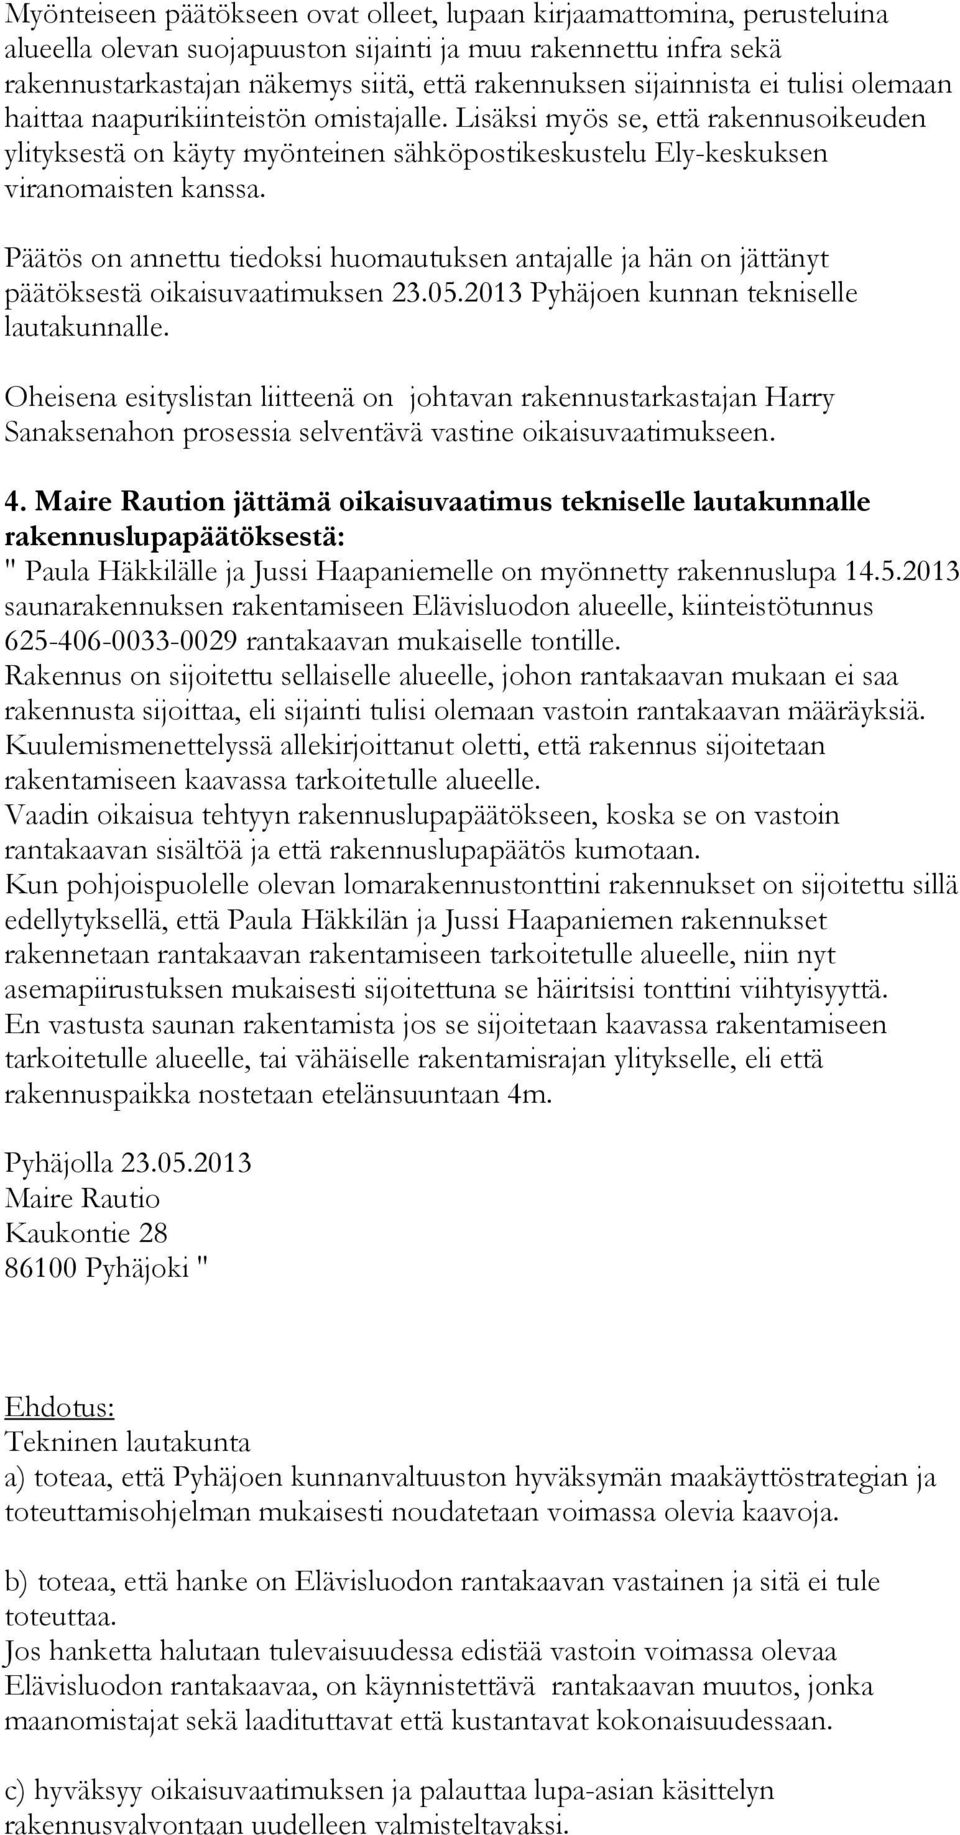 Päätös on annettu tiedoksi huomautuksen antajalle ja hän on jättänyt päätöksestä oikaisuvaatimuksen 23.05.2013 Pyhäjoen kunnan tekniselle lautakunnalle.